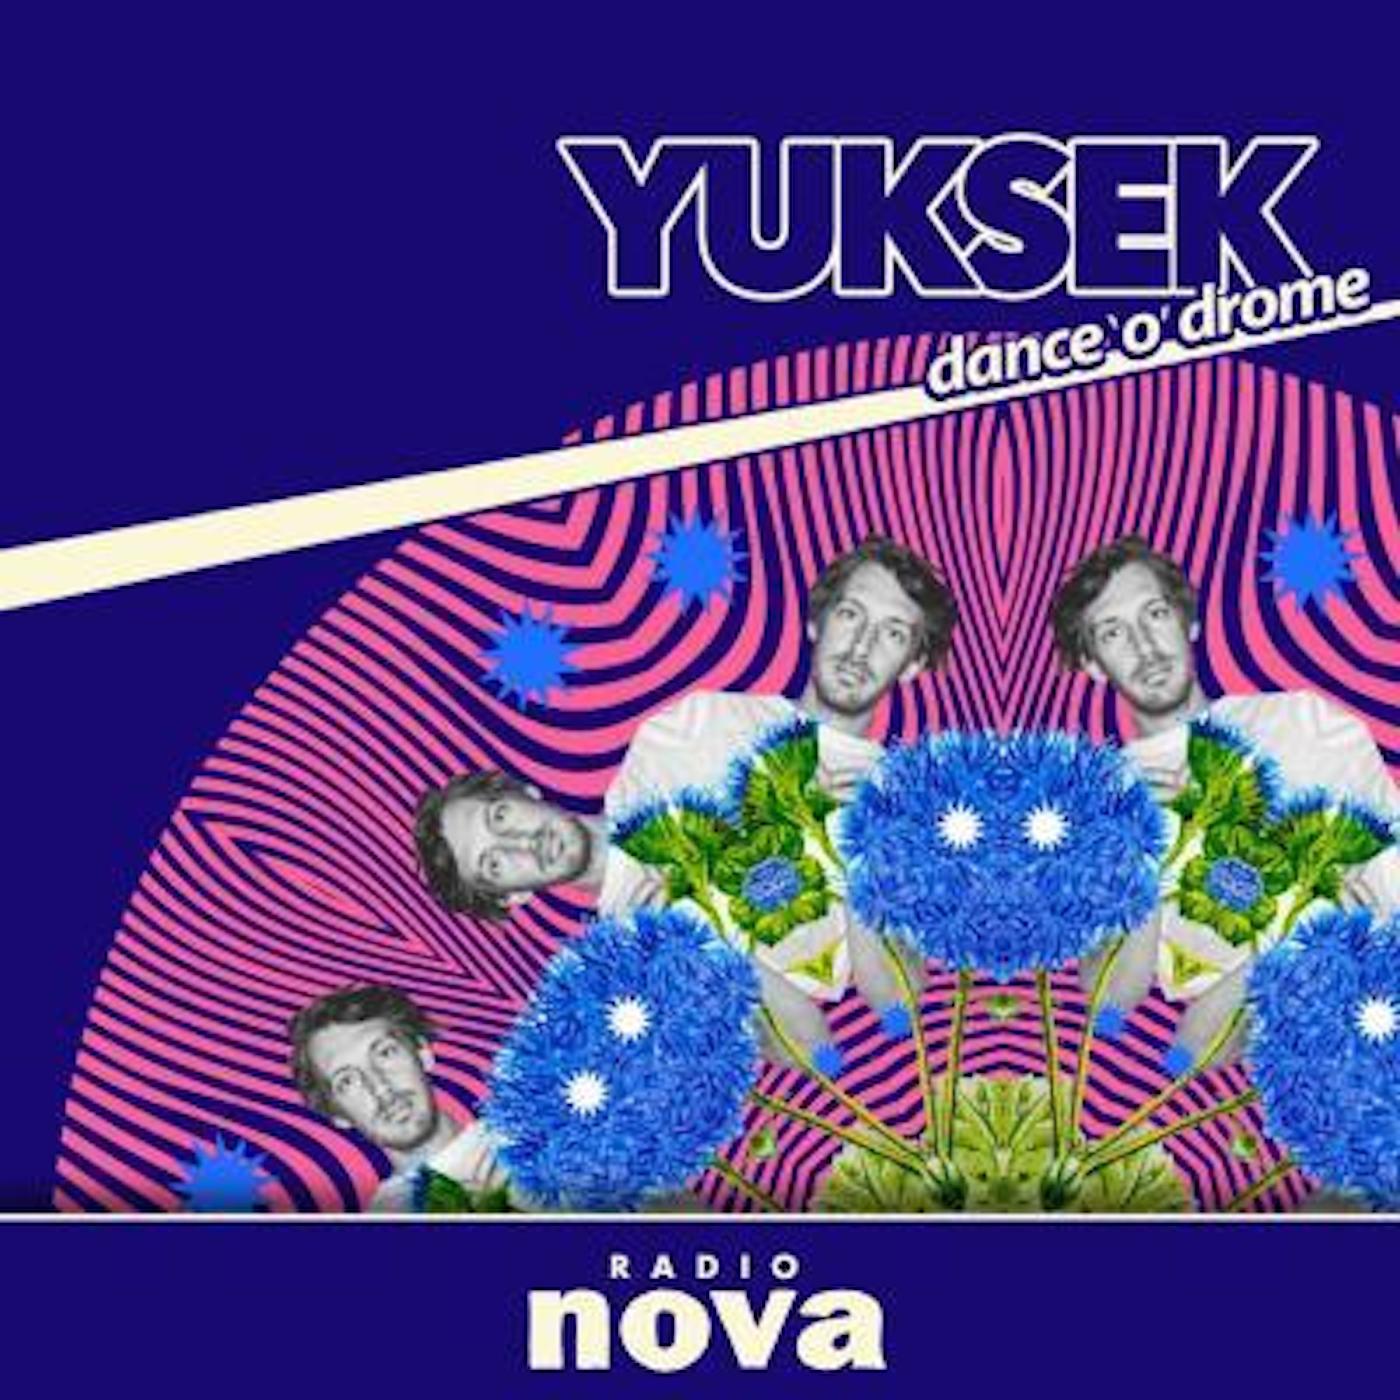 « Dance’o’drome » #42 : le mix de Yuksek, avec Barış K